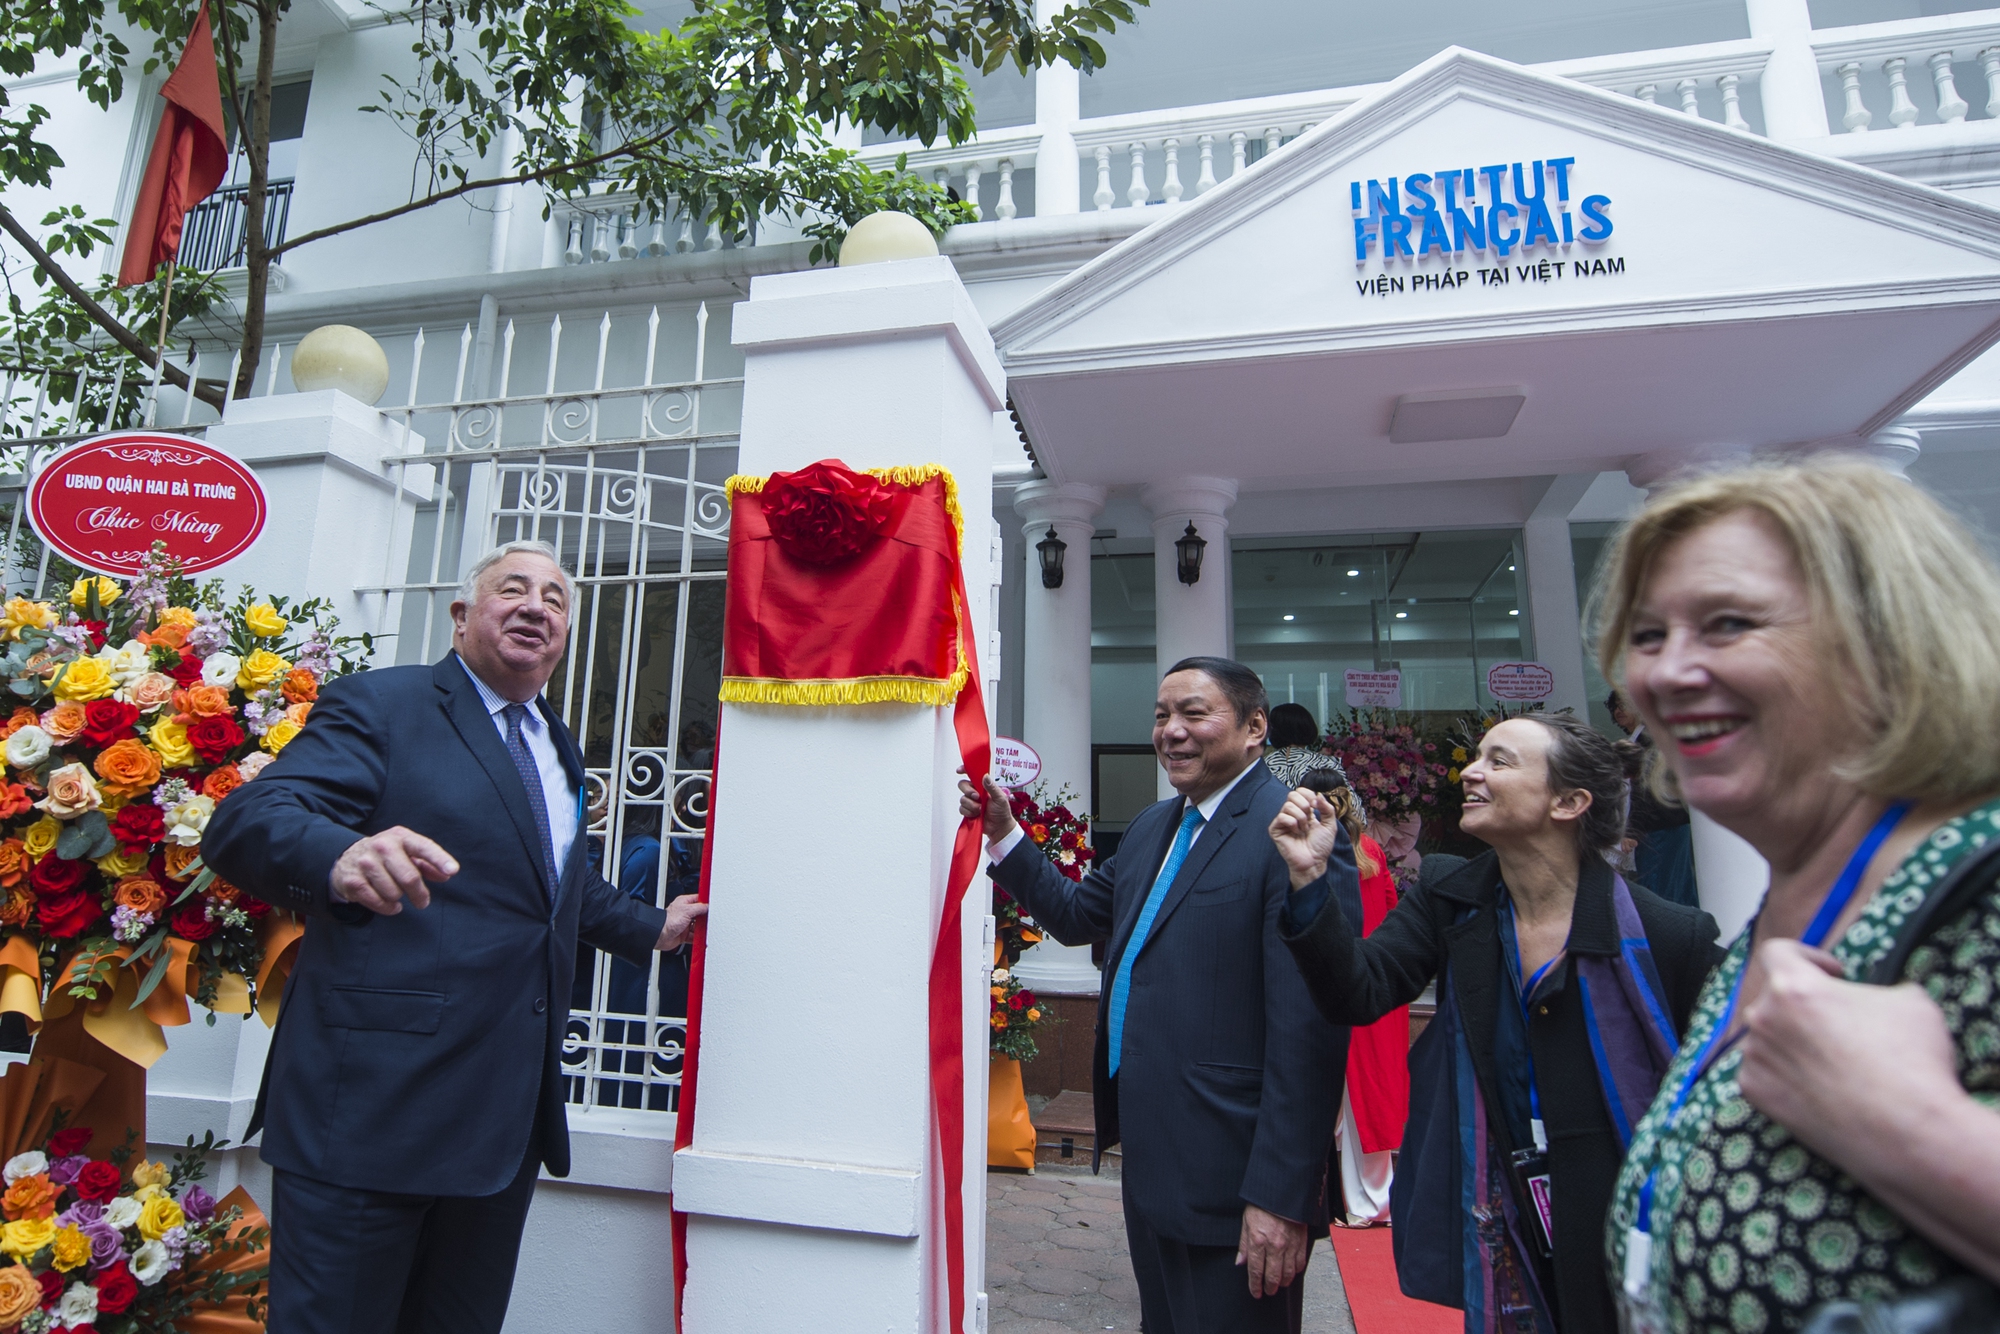 Chủ tịch Thượng viện Pháp thăm cầu Long Biên, khai trương cơ sở mới của Viện Pháp tại Hà Nội - Ảnh 2.